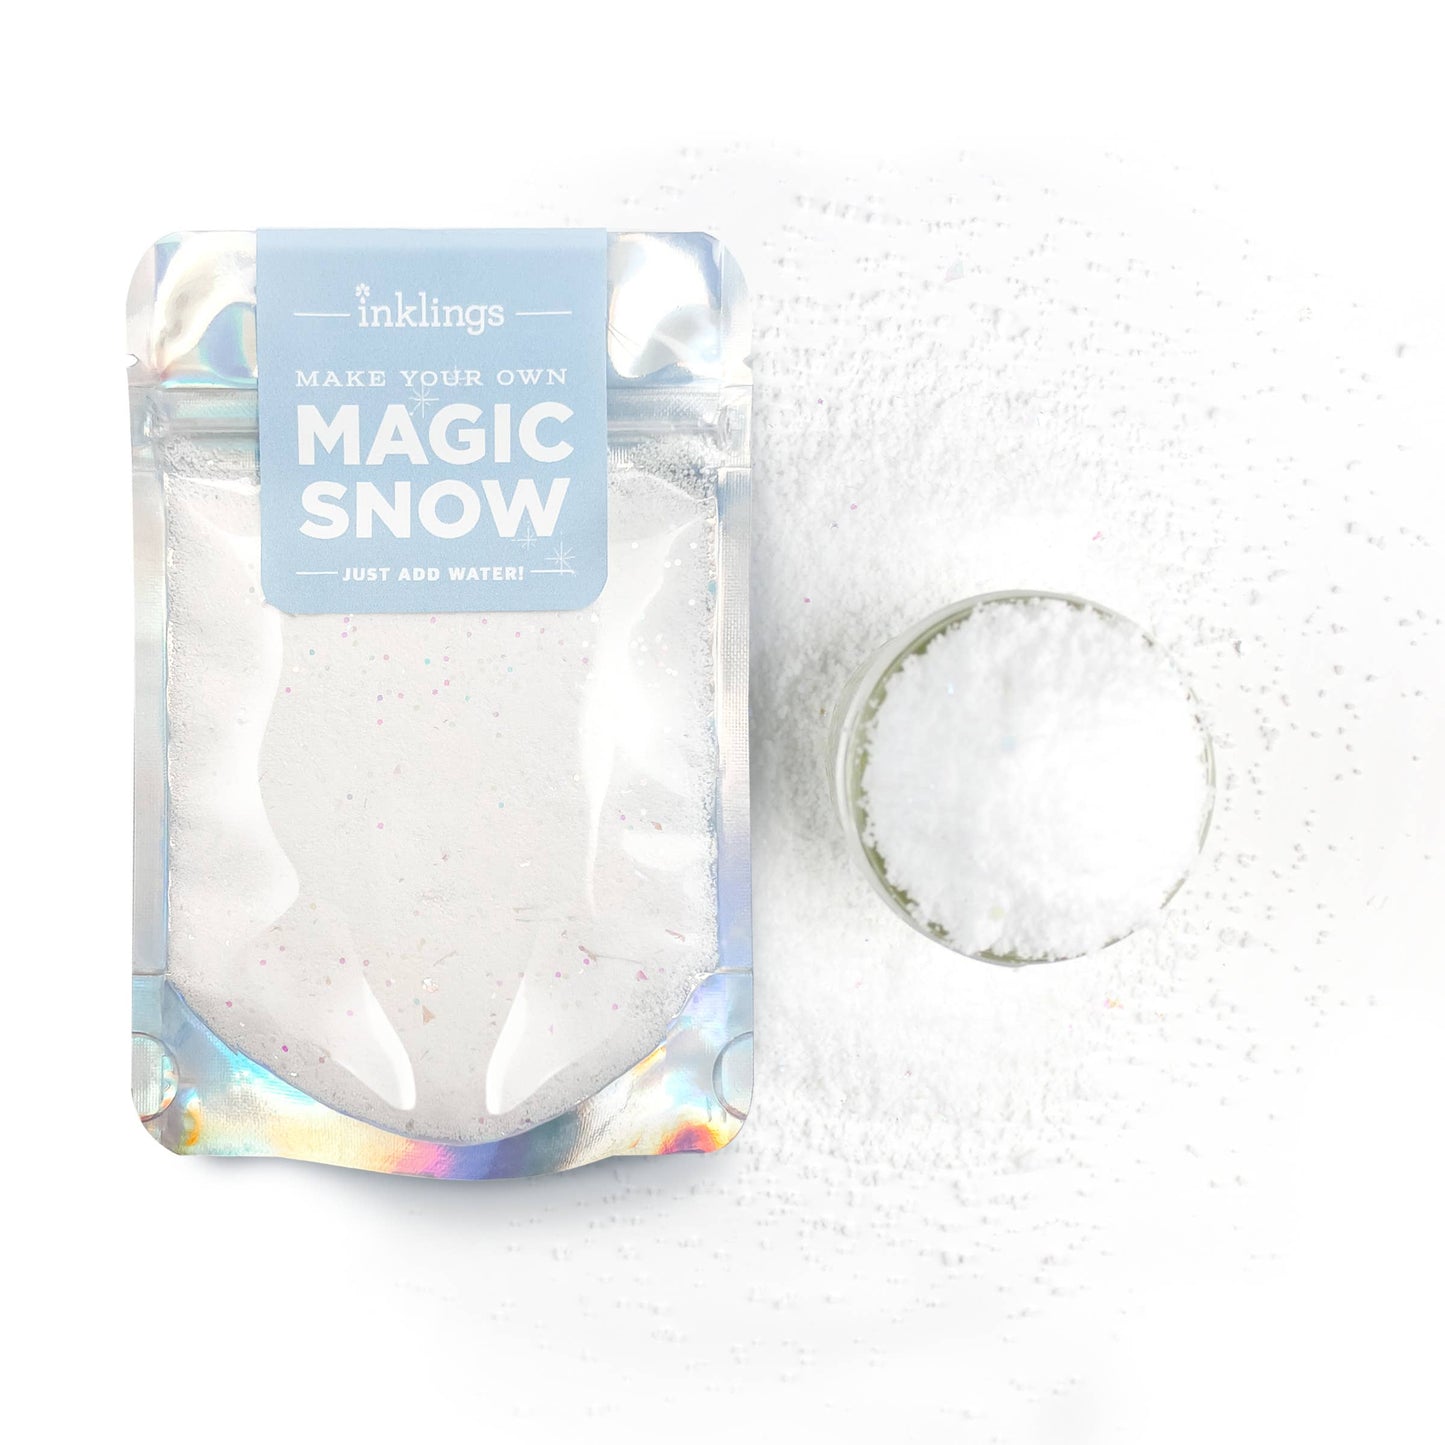 Magic Snow Kit - Holiday Activity